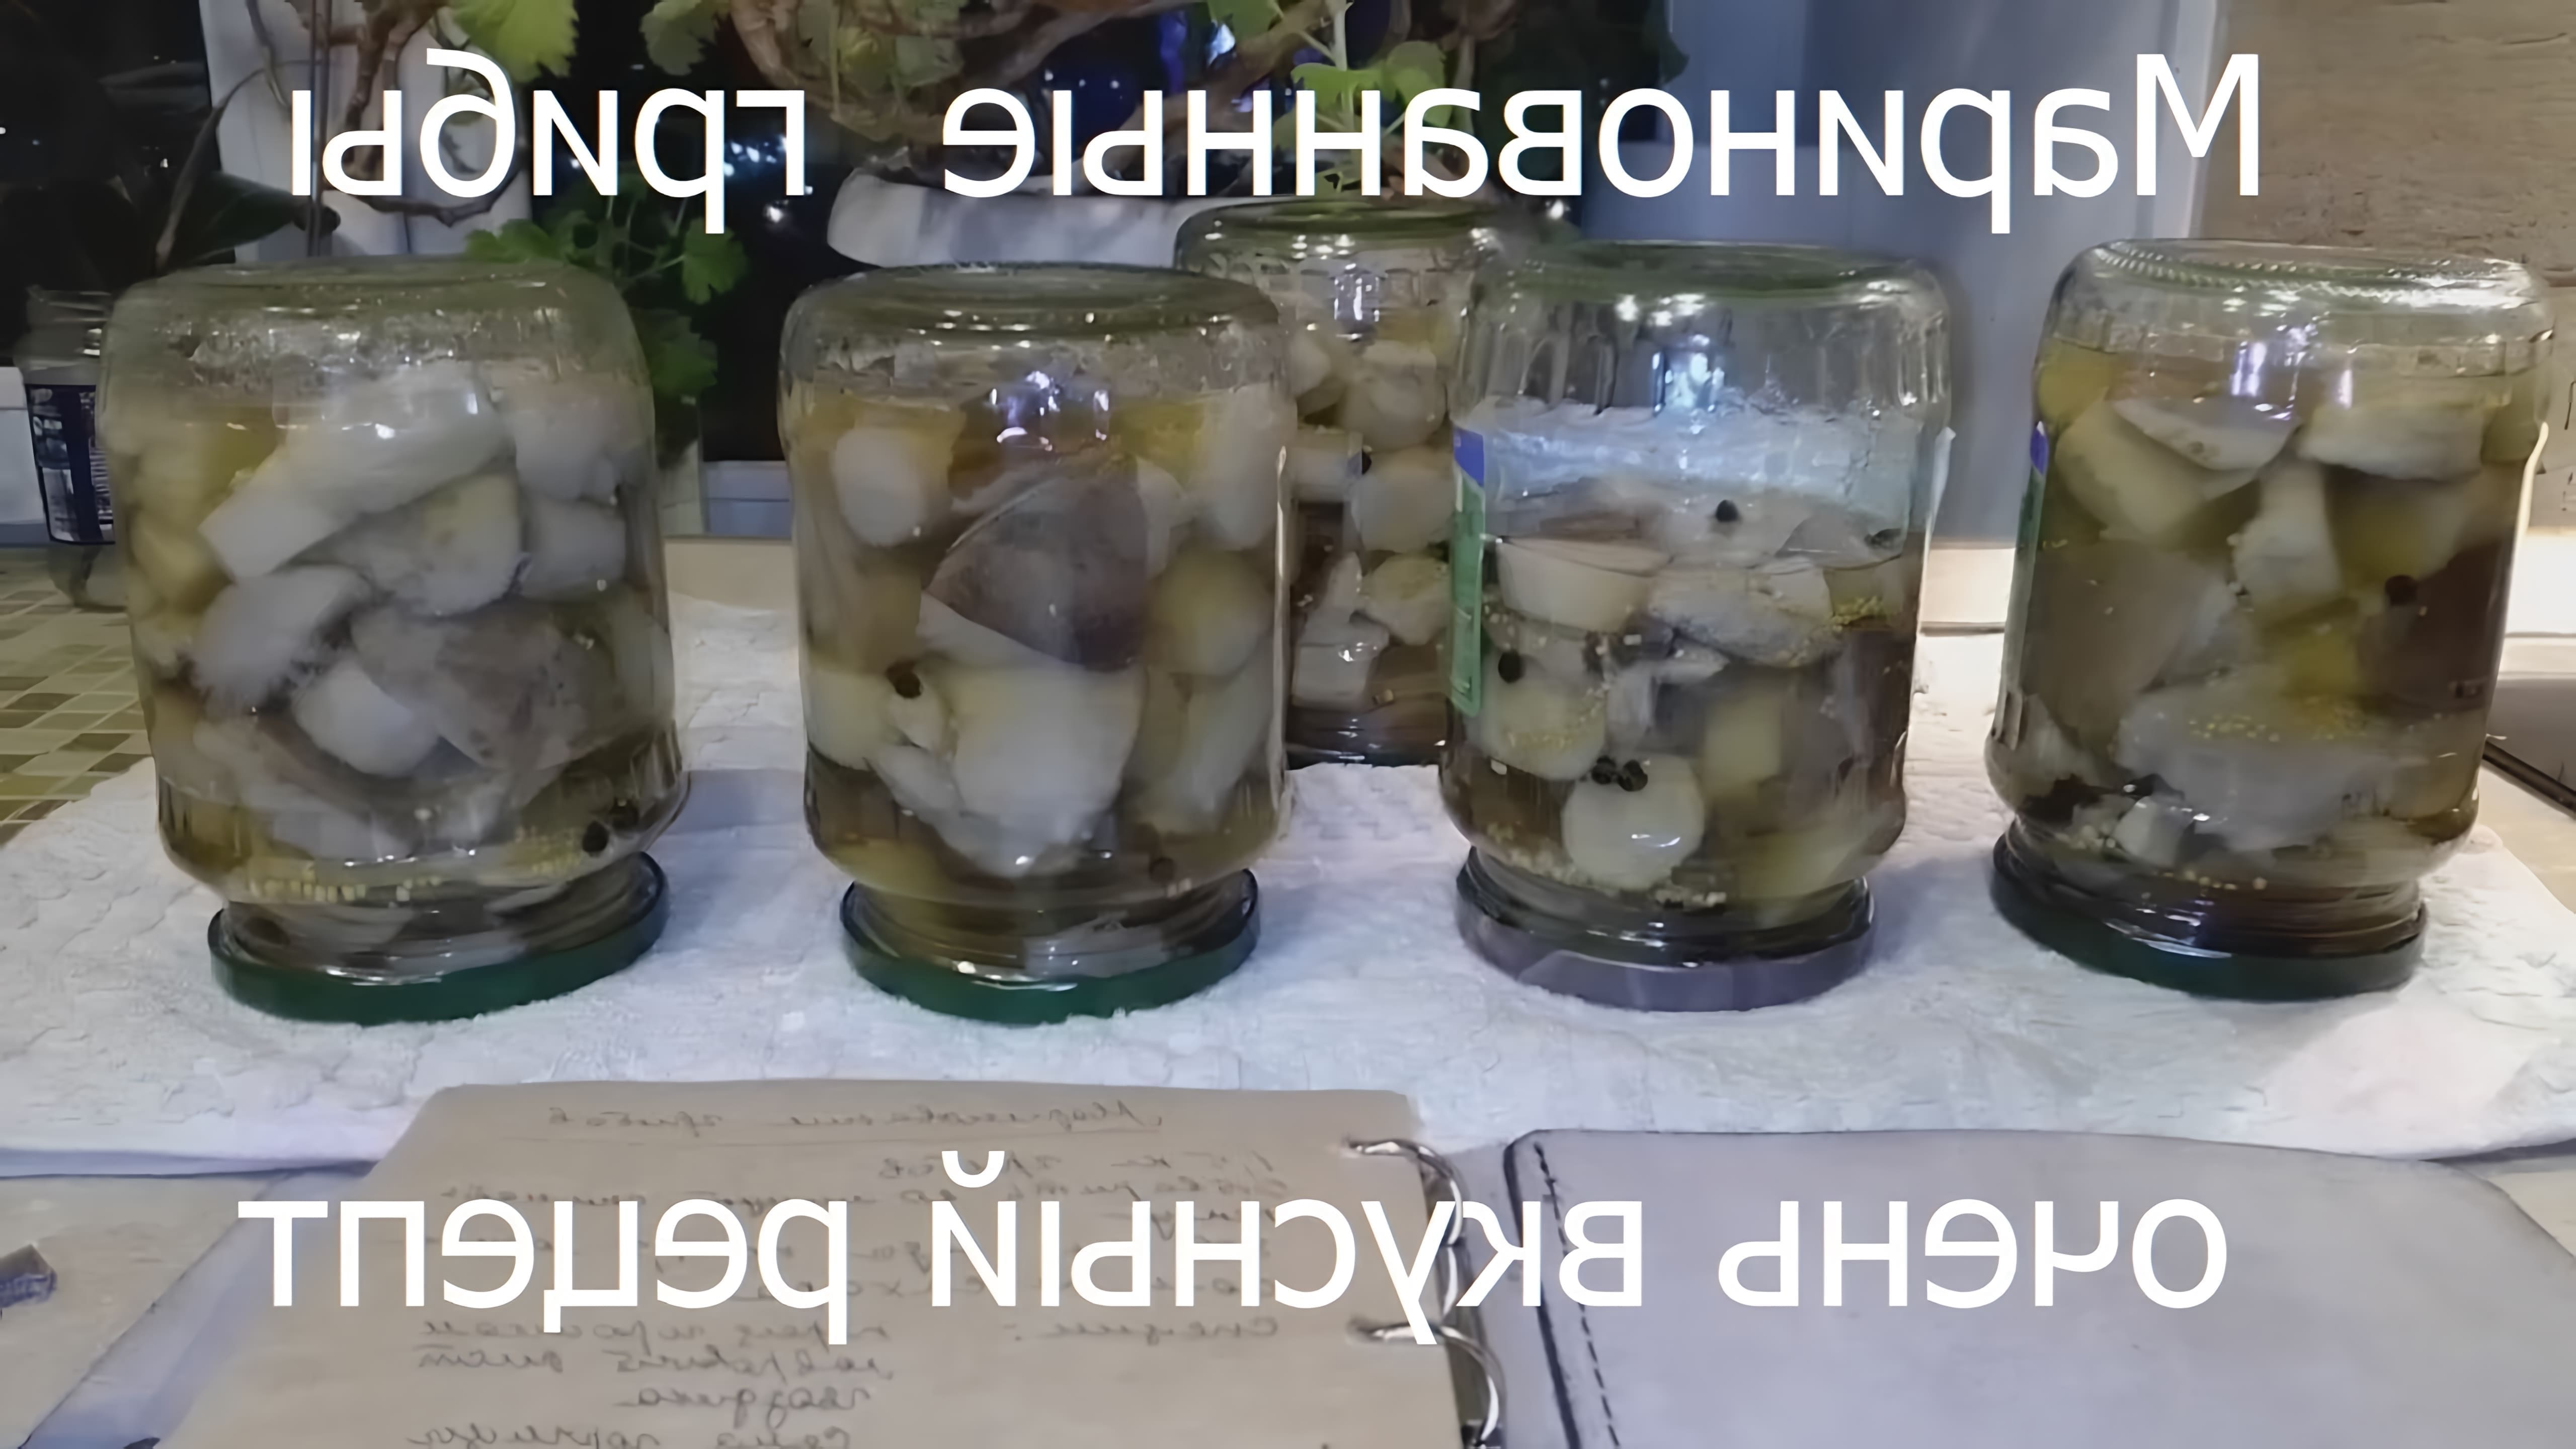 В этом видео демонстрируется процесс маринования грибов